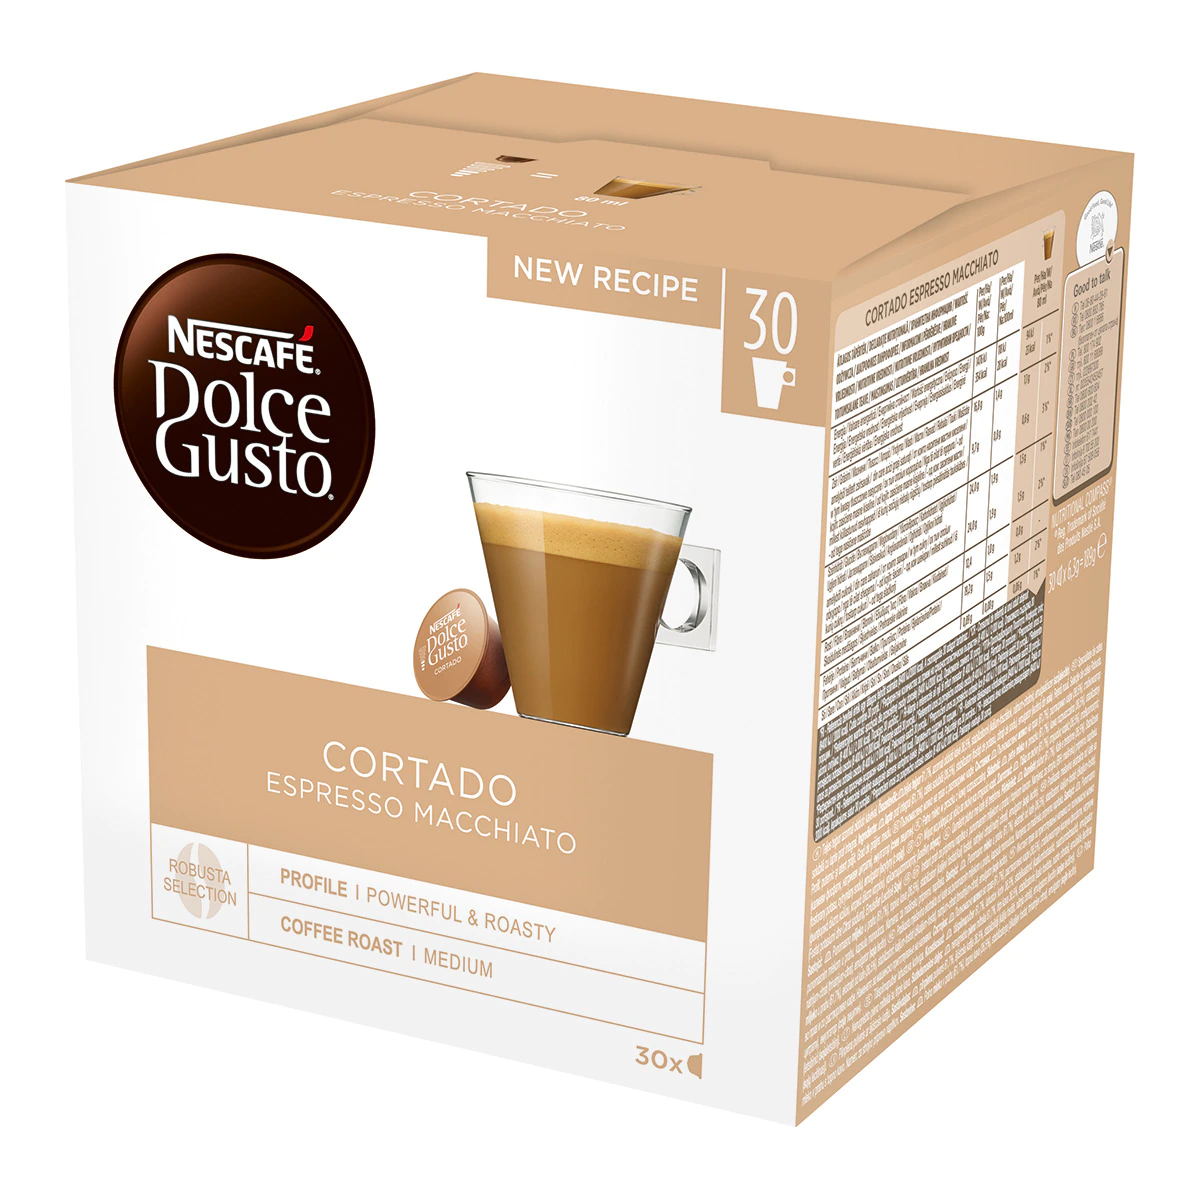 Estuche 30 cápsulas NESCAFE DOLCE GUSTO café cortado espresso Macchiatto selección arábica y robusta